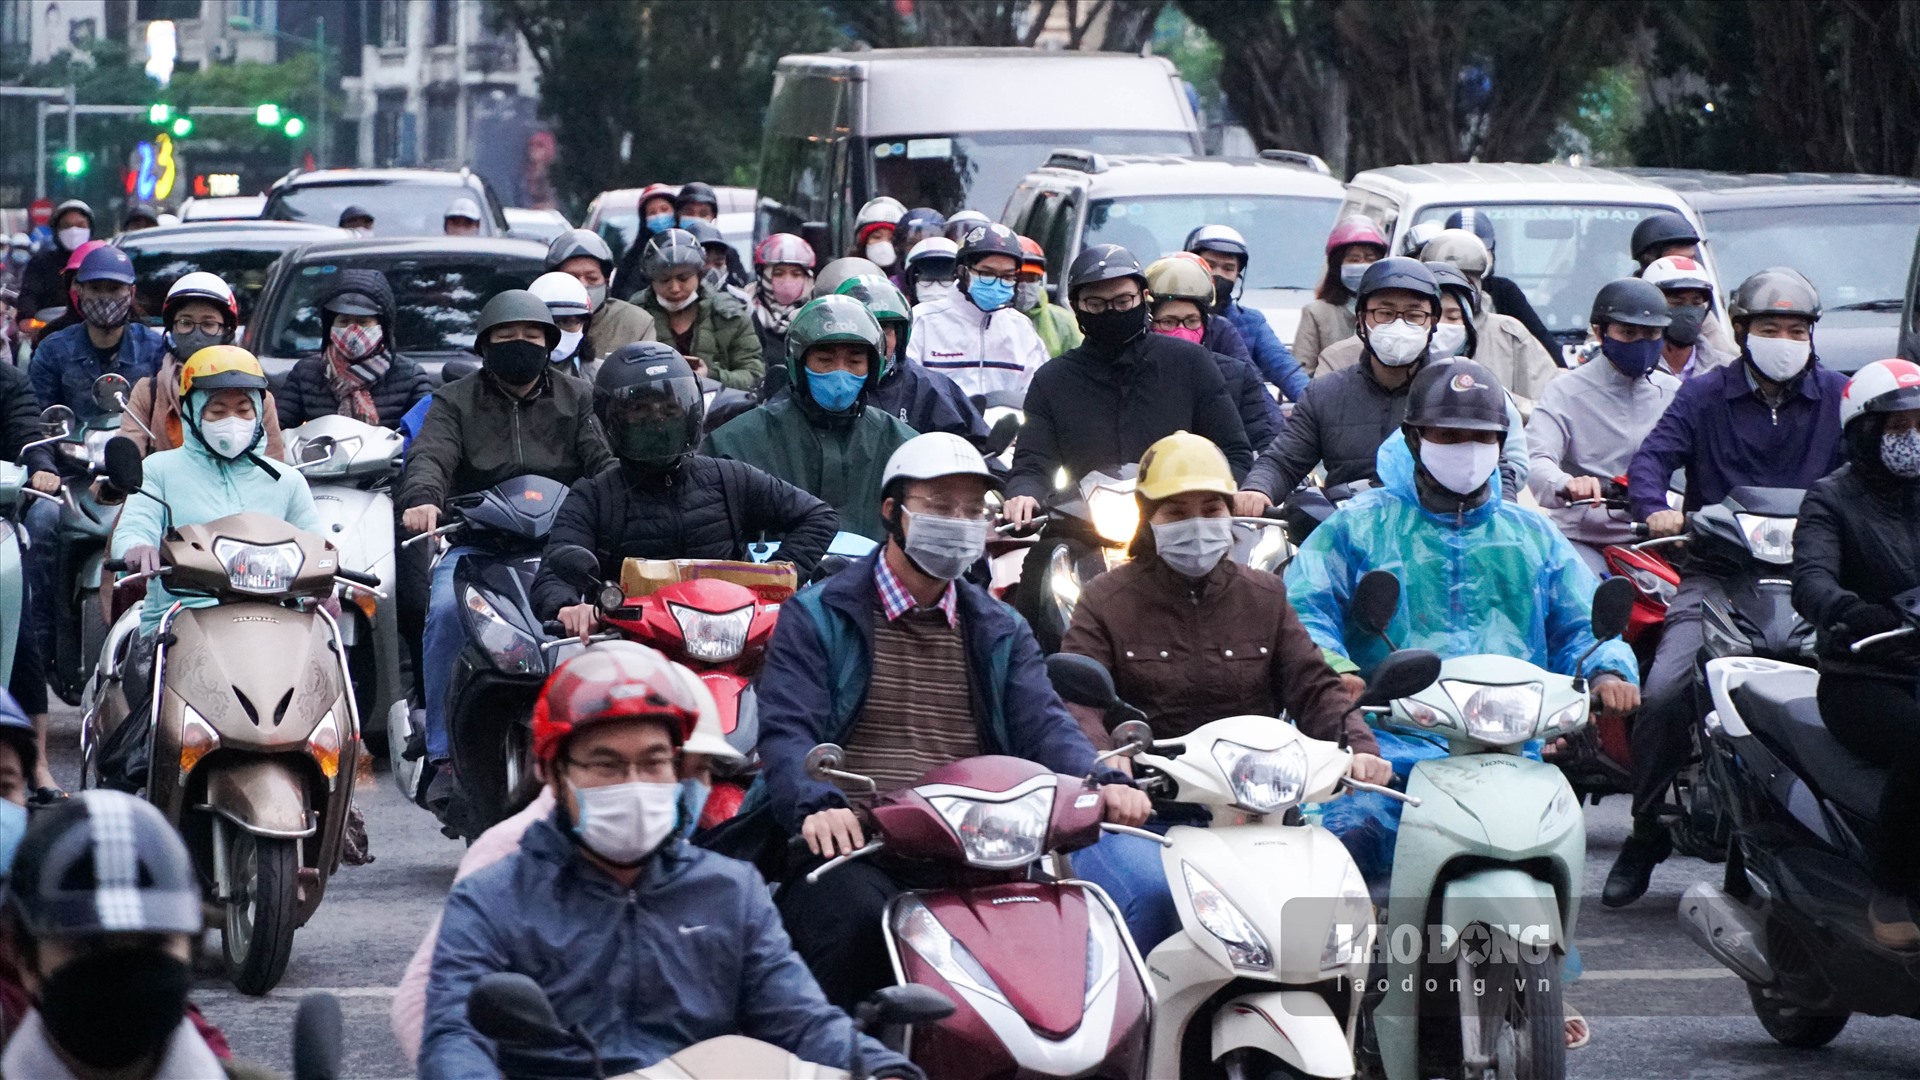 Chiều ngày 24.4, theo ghi nhận của phóng viên, sau khi các biện pháp cách ly xã hội được nới lỏng, hàng loạt tuyến phố trong nội đô Hà Nội tấp nập phương tiện qua lại.